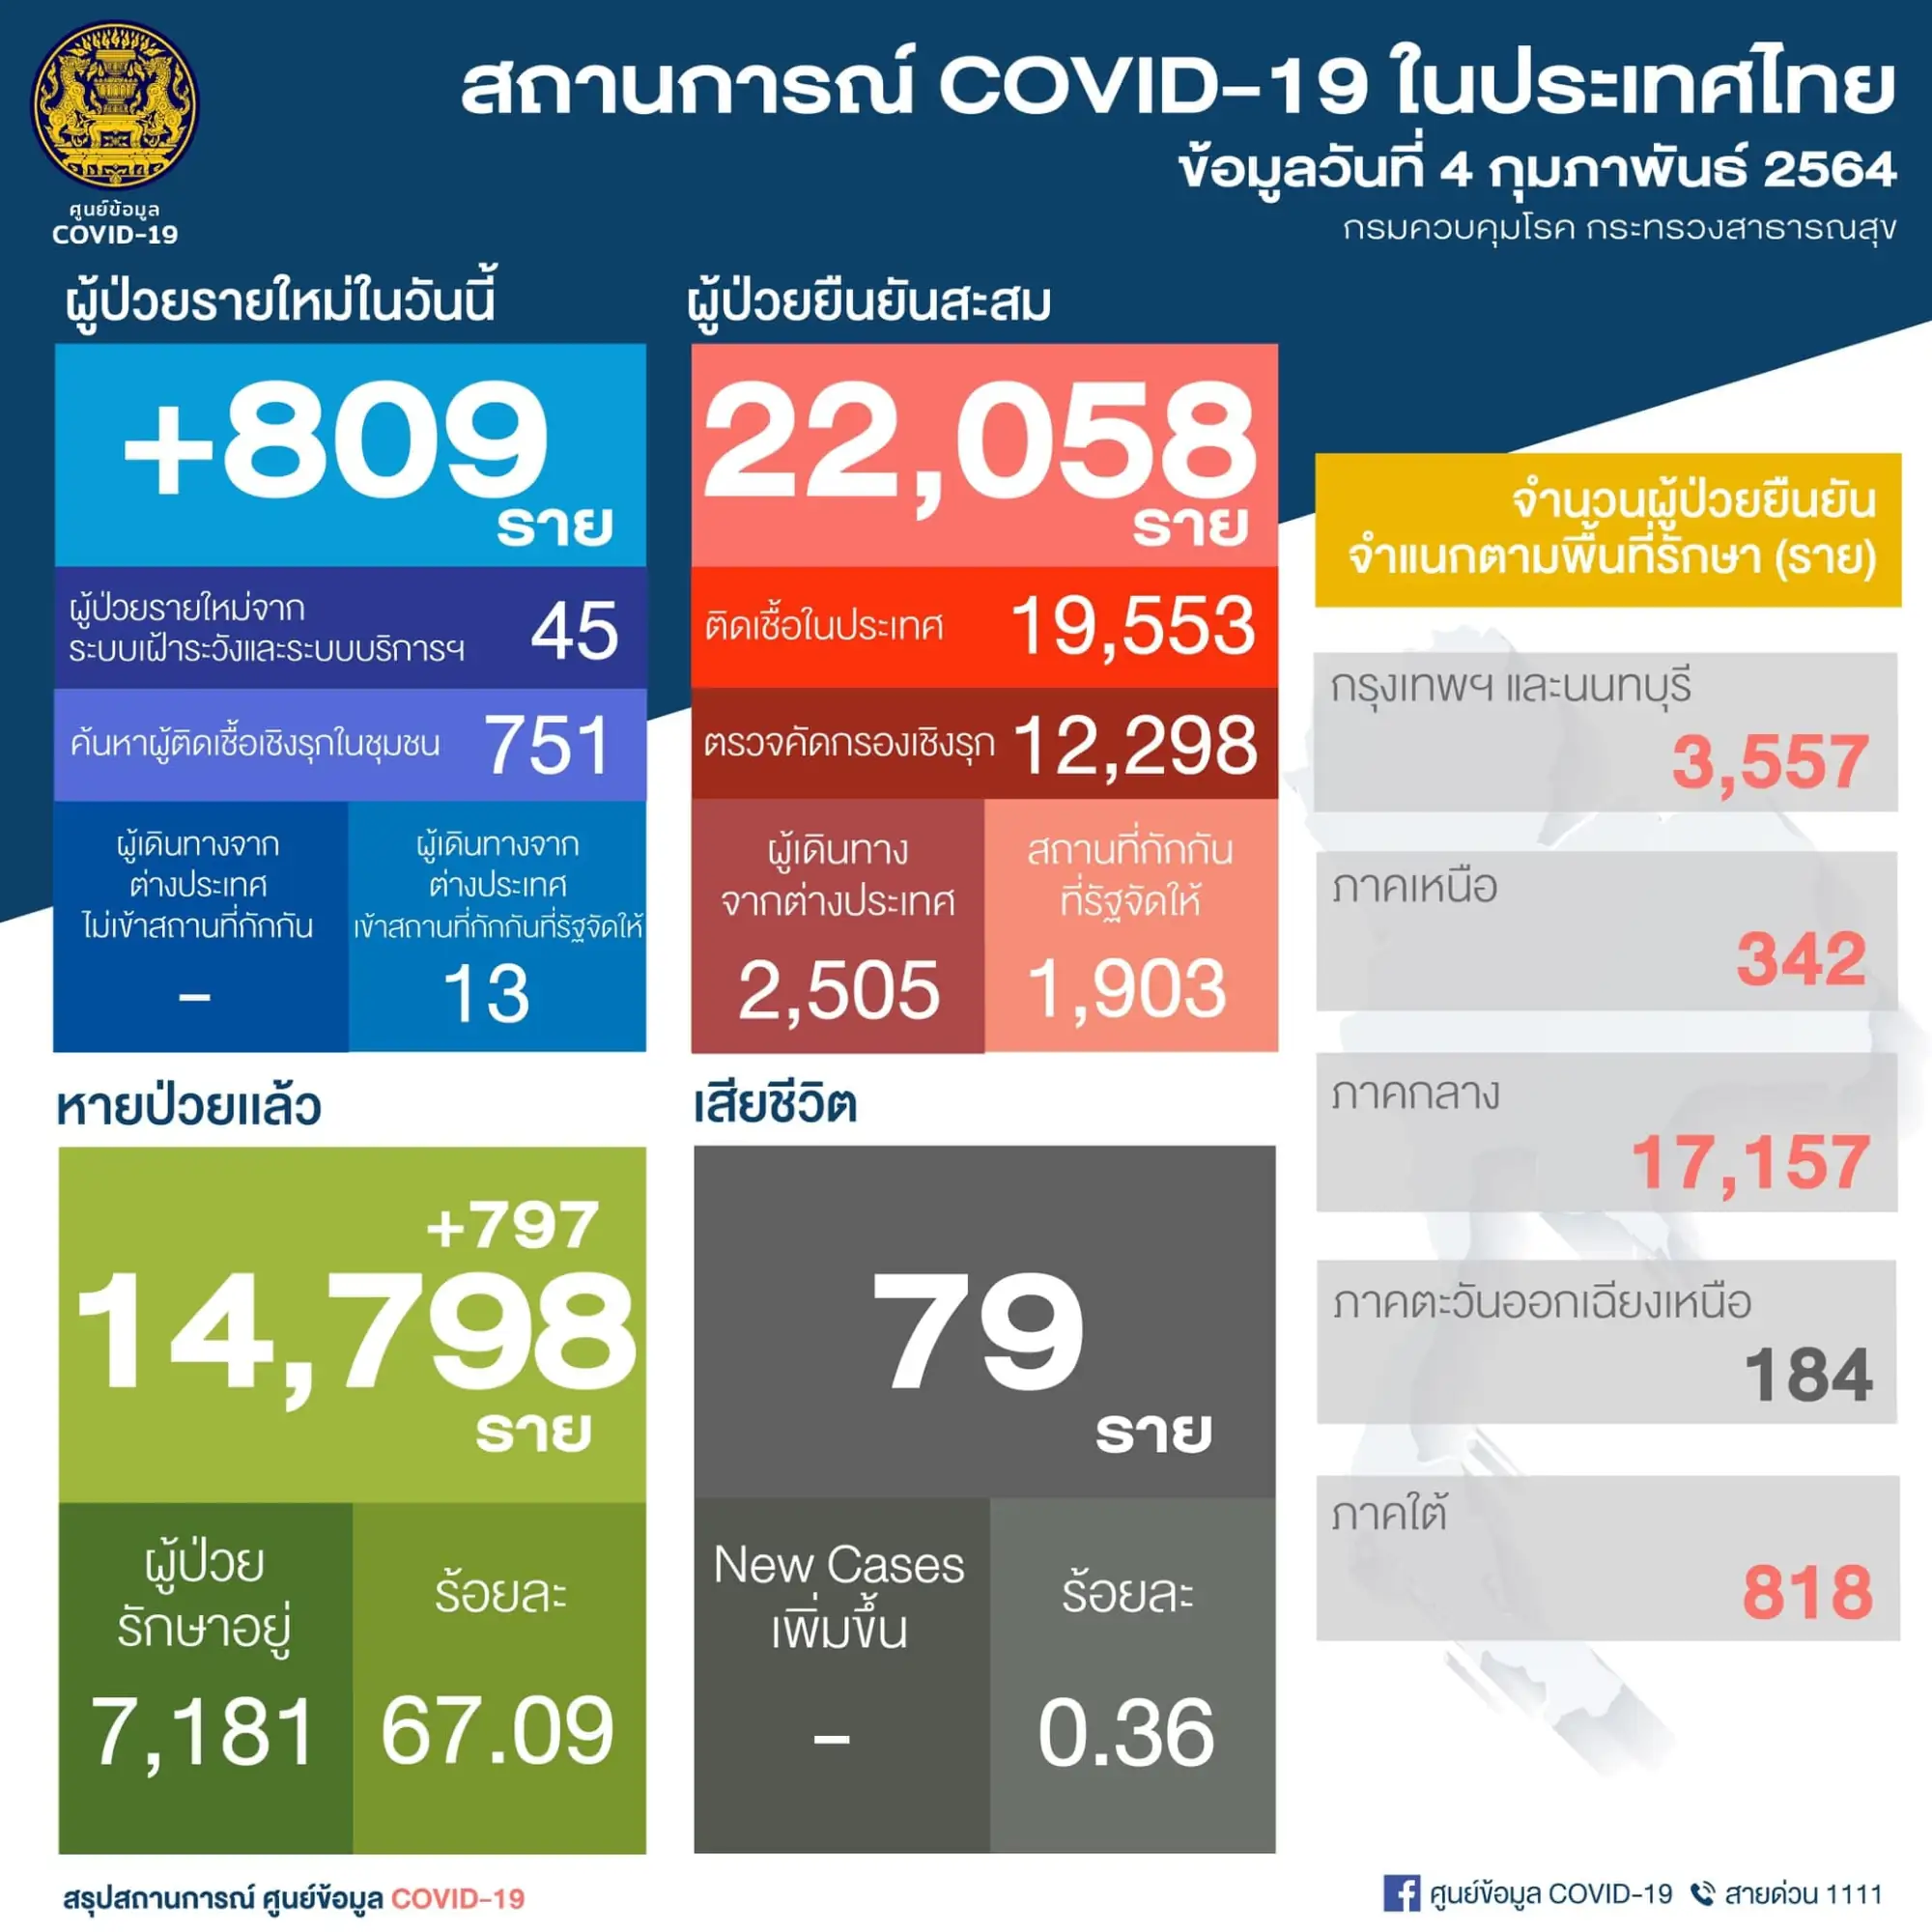 泰国疫情4日新增809例 （图片来源：PR Thai Government 脸书粉丝专页）